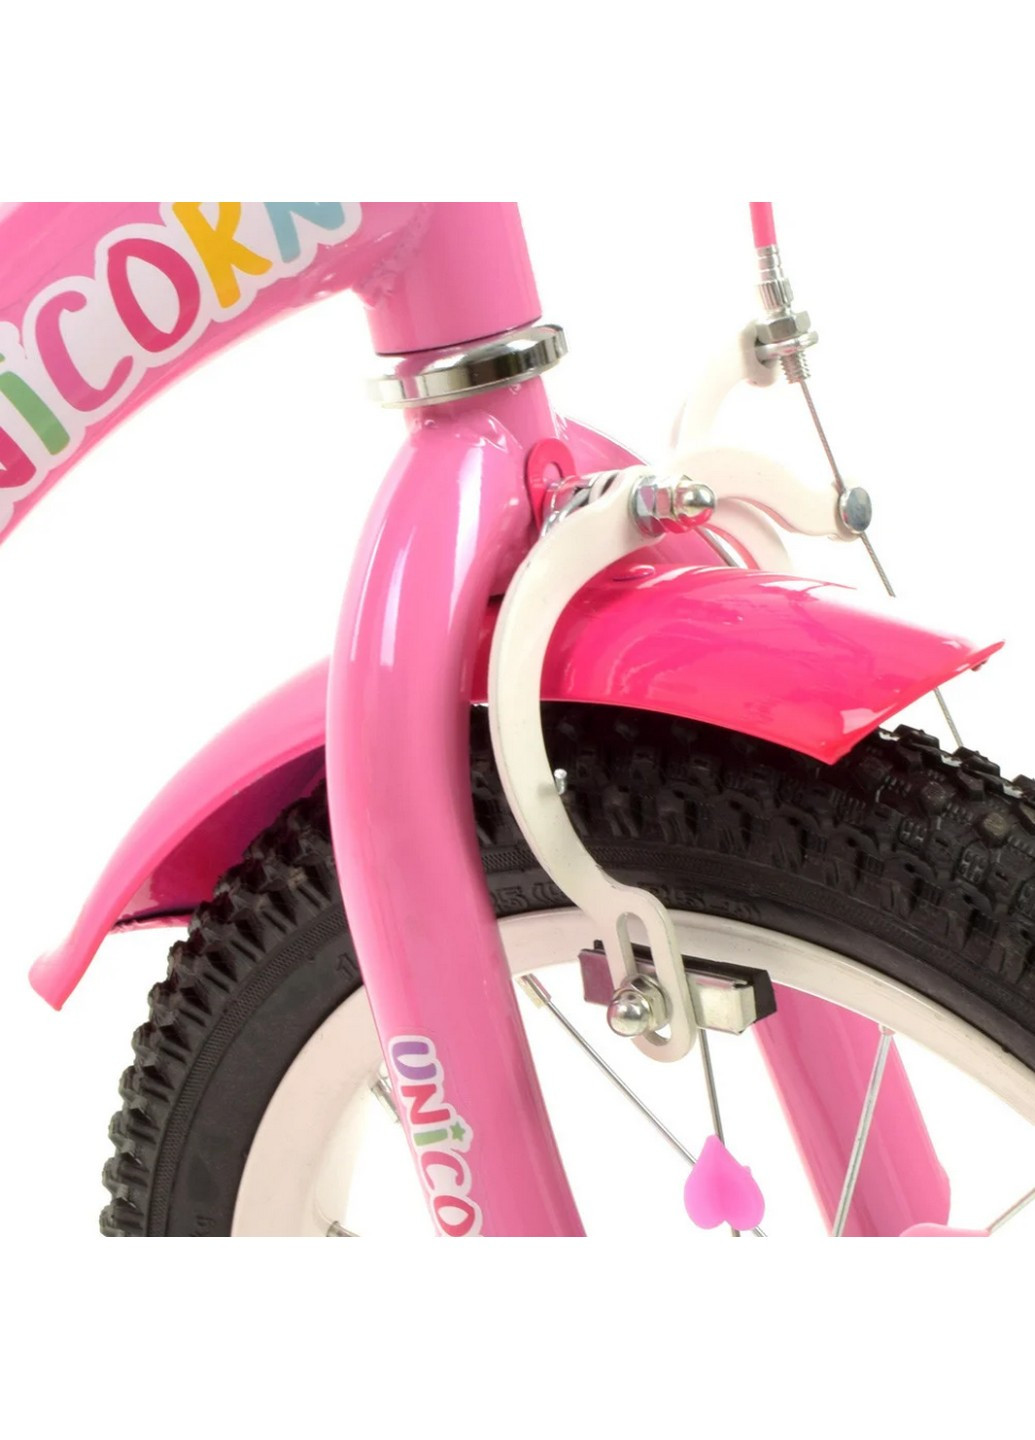 Велосипед детский 14 дюймов Profi (258031153)